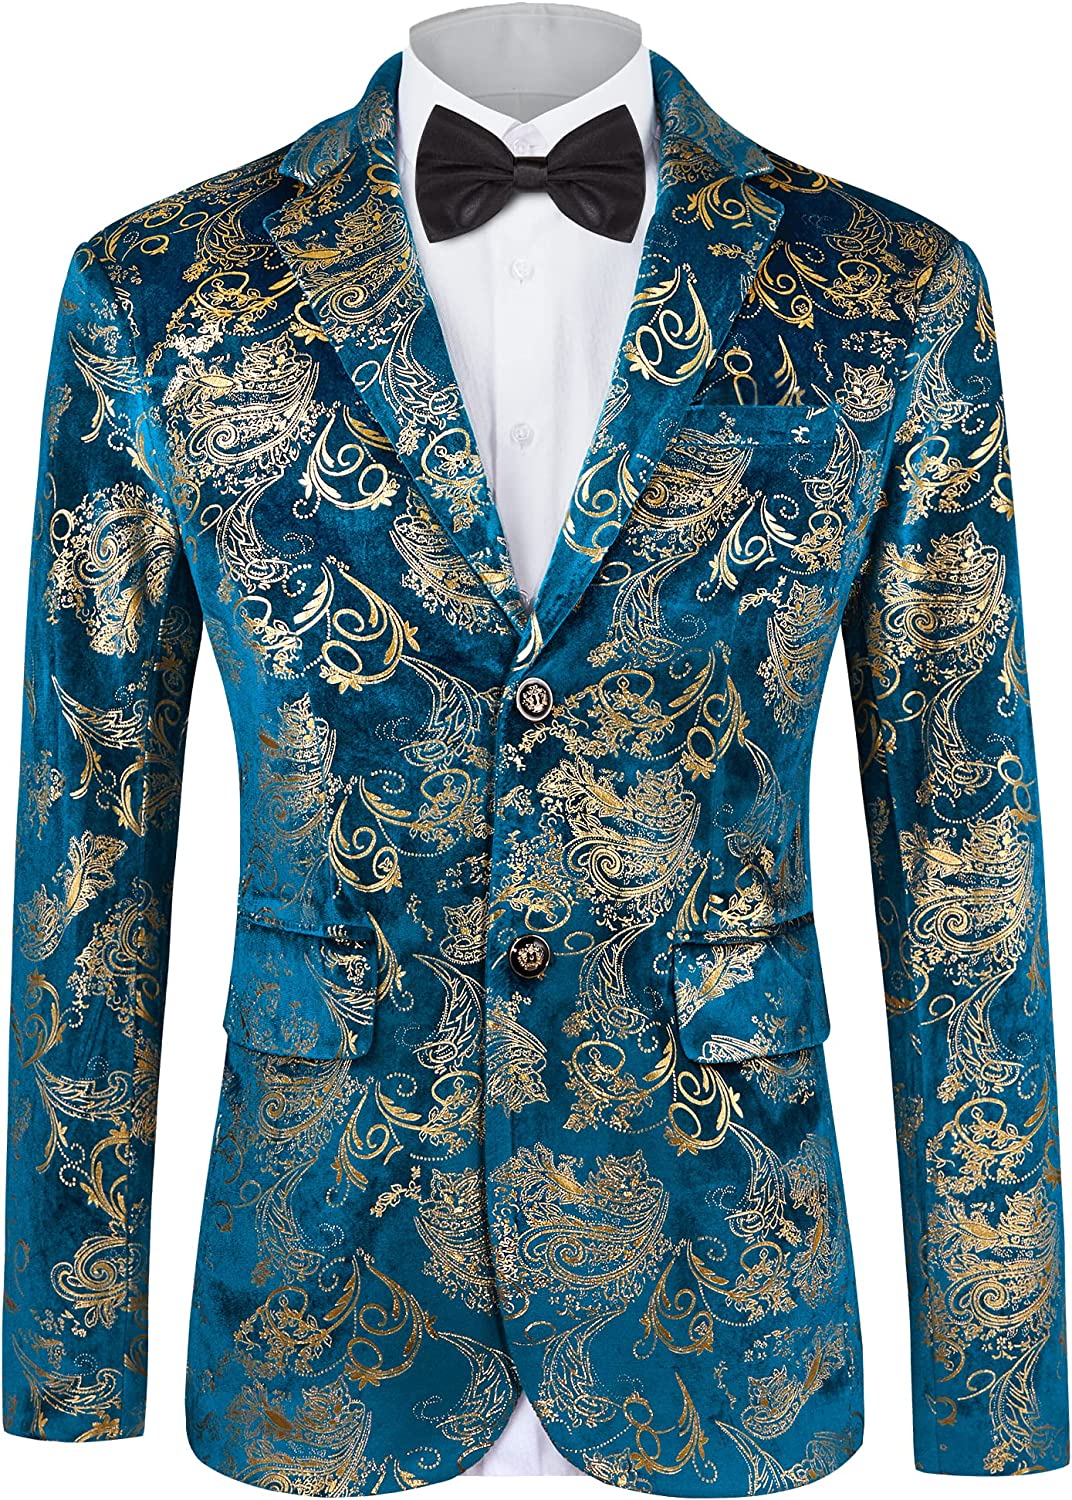 MAGE MALE Men's Dress Party Floral Suit Jacket Notched Lapel Slim